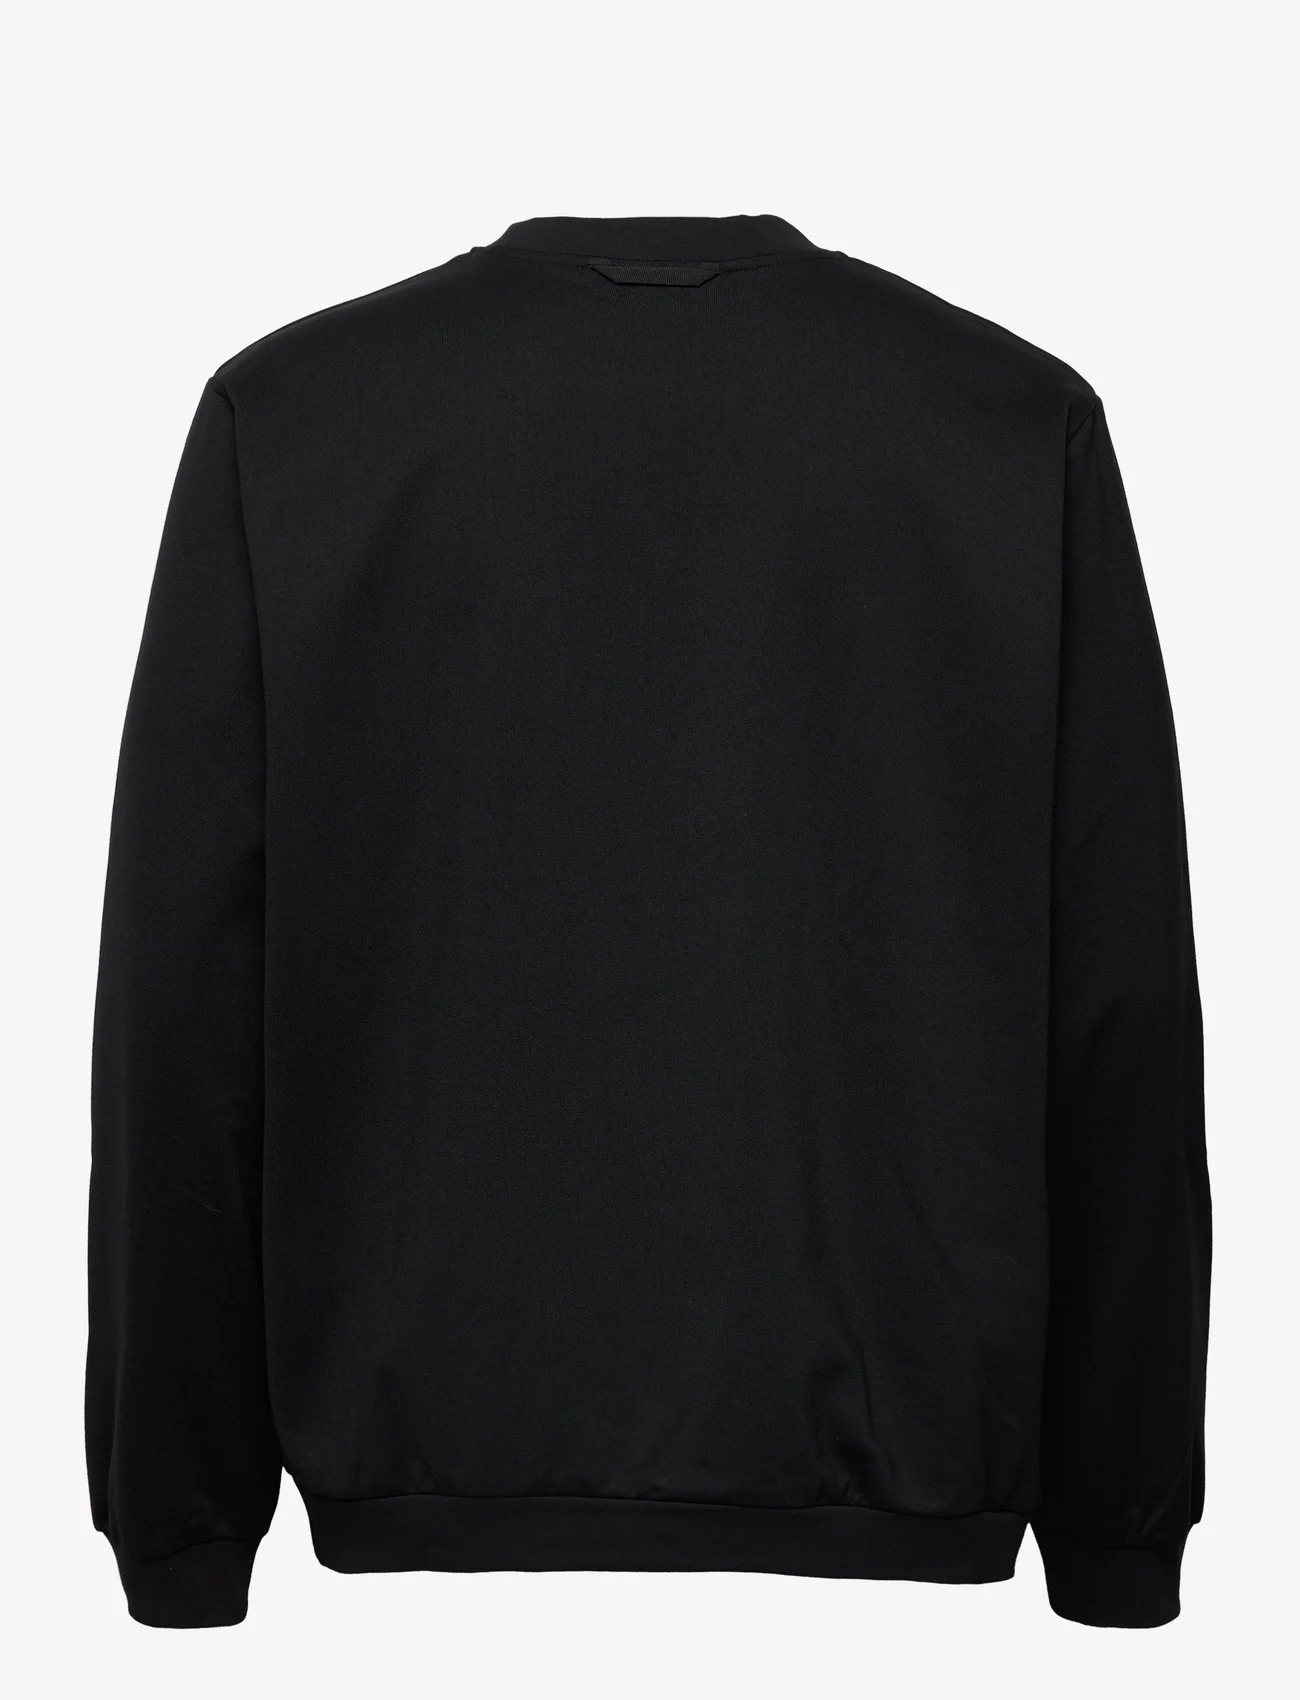 adidas Originals - adidas Adventure Winter Crewneck Sweatshirt - jogginghosen - black - 1